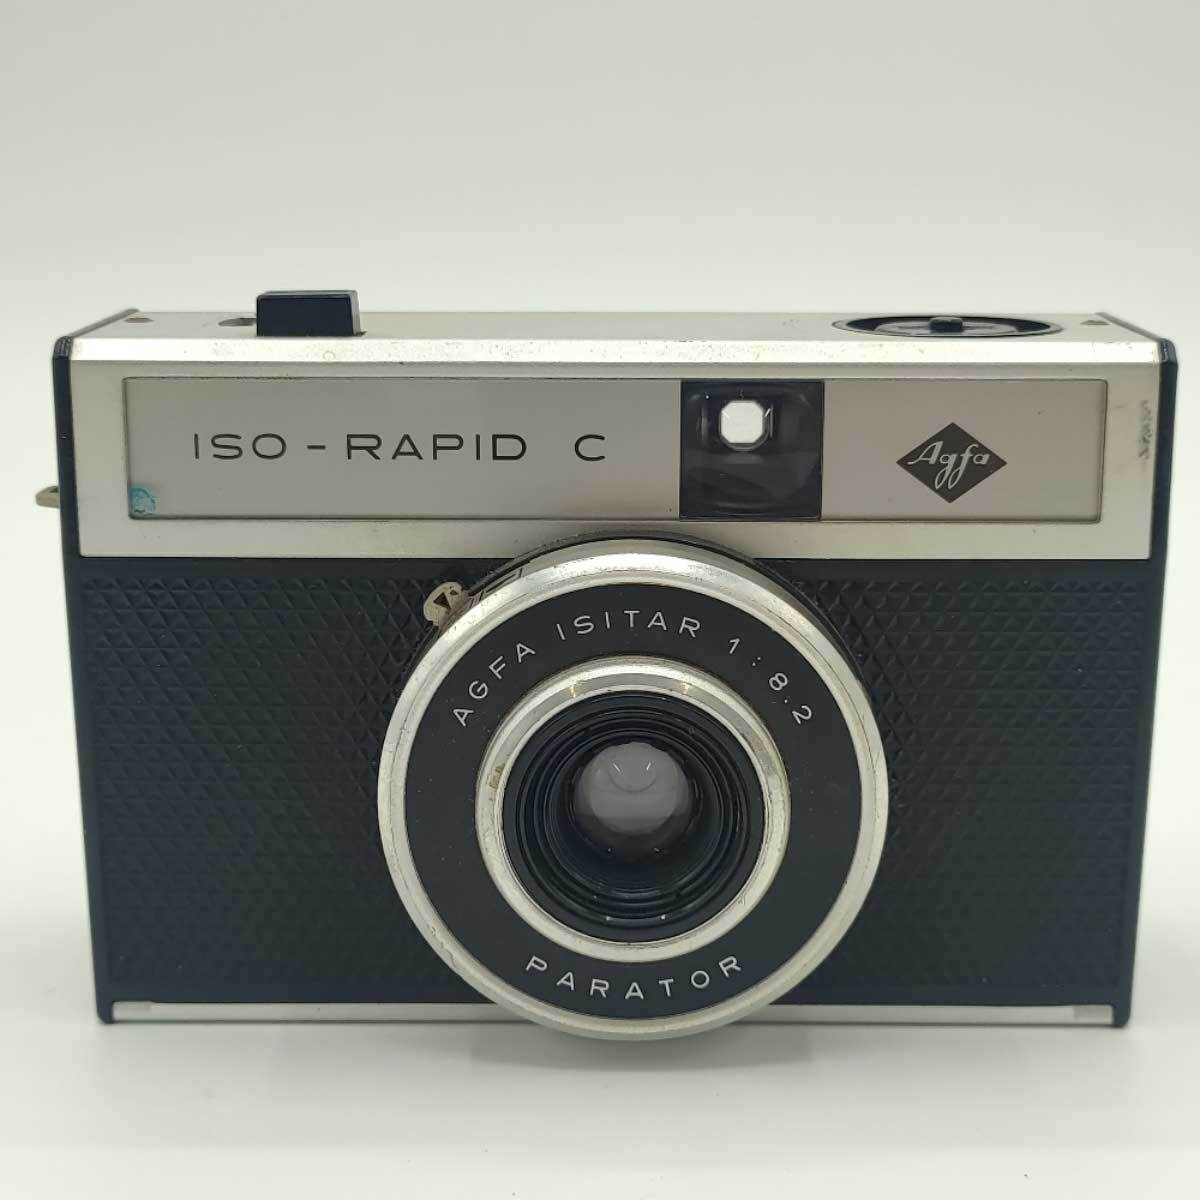 【中古】アグファ ISO-RAPID c PARATOR ドイツ製 ヴィンテージ アンティークカメラ Agfa_画像1